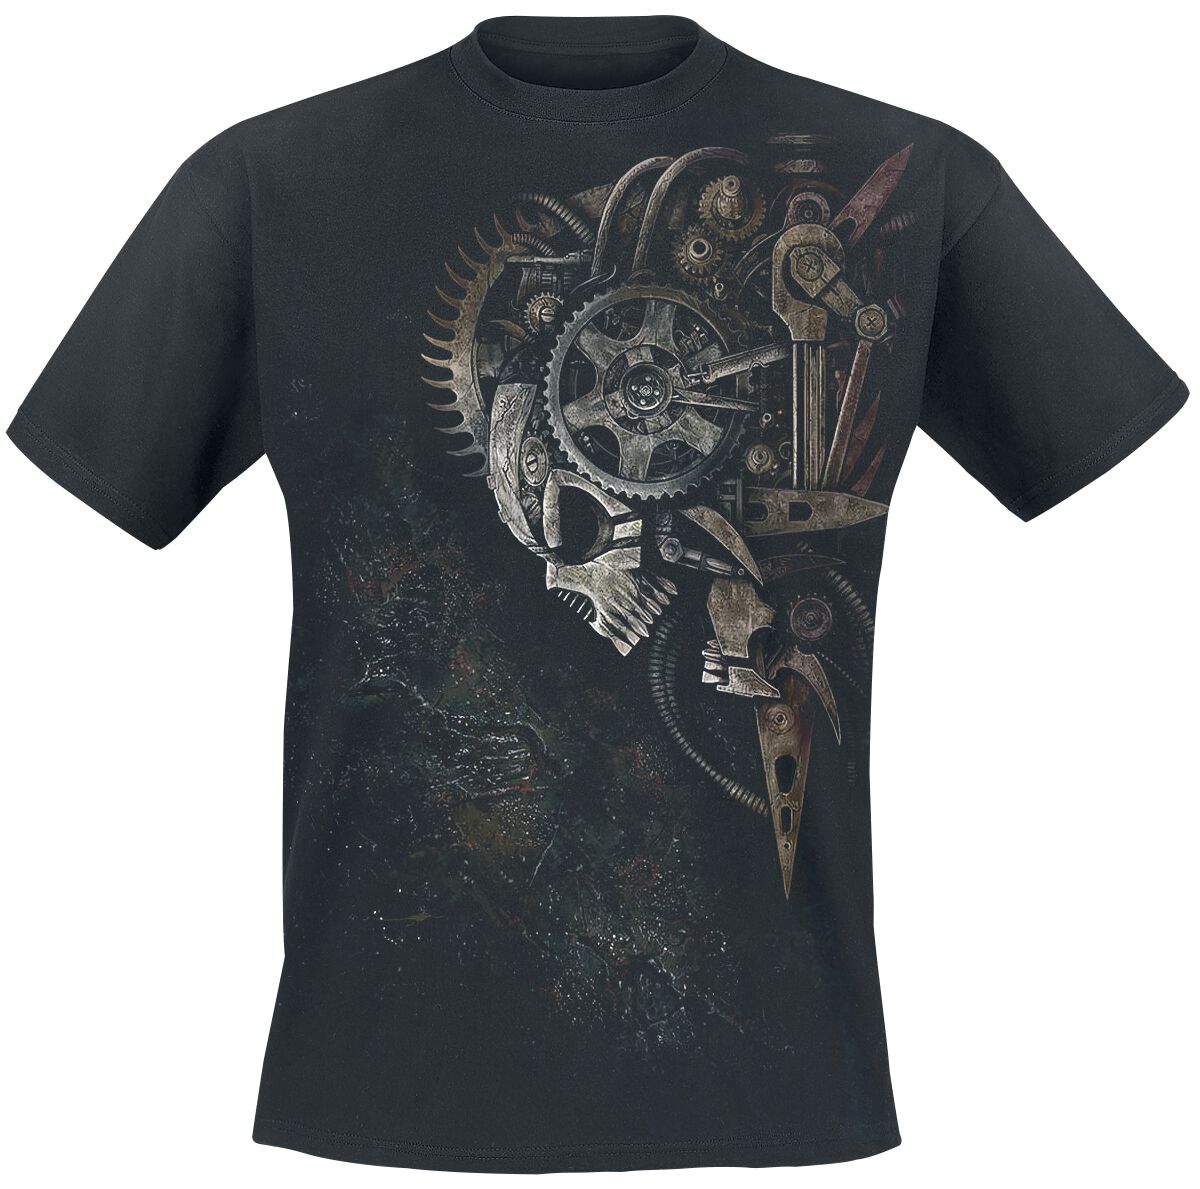 Spiral - Gothic T-Shirt - Diesel Punk - S bis 4XL - für Männer - Größe S - schwarz